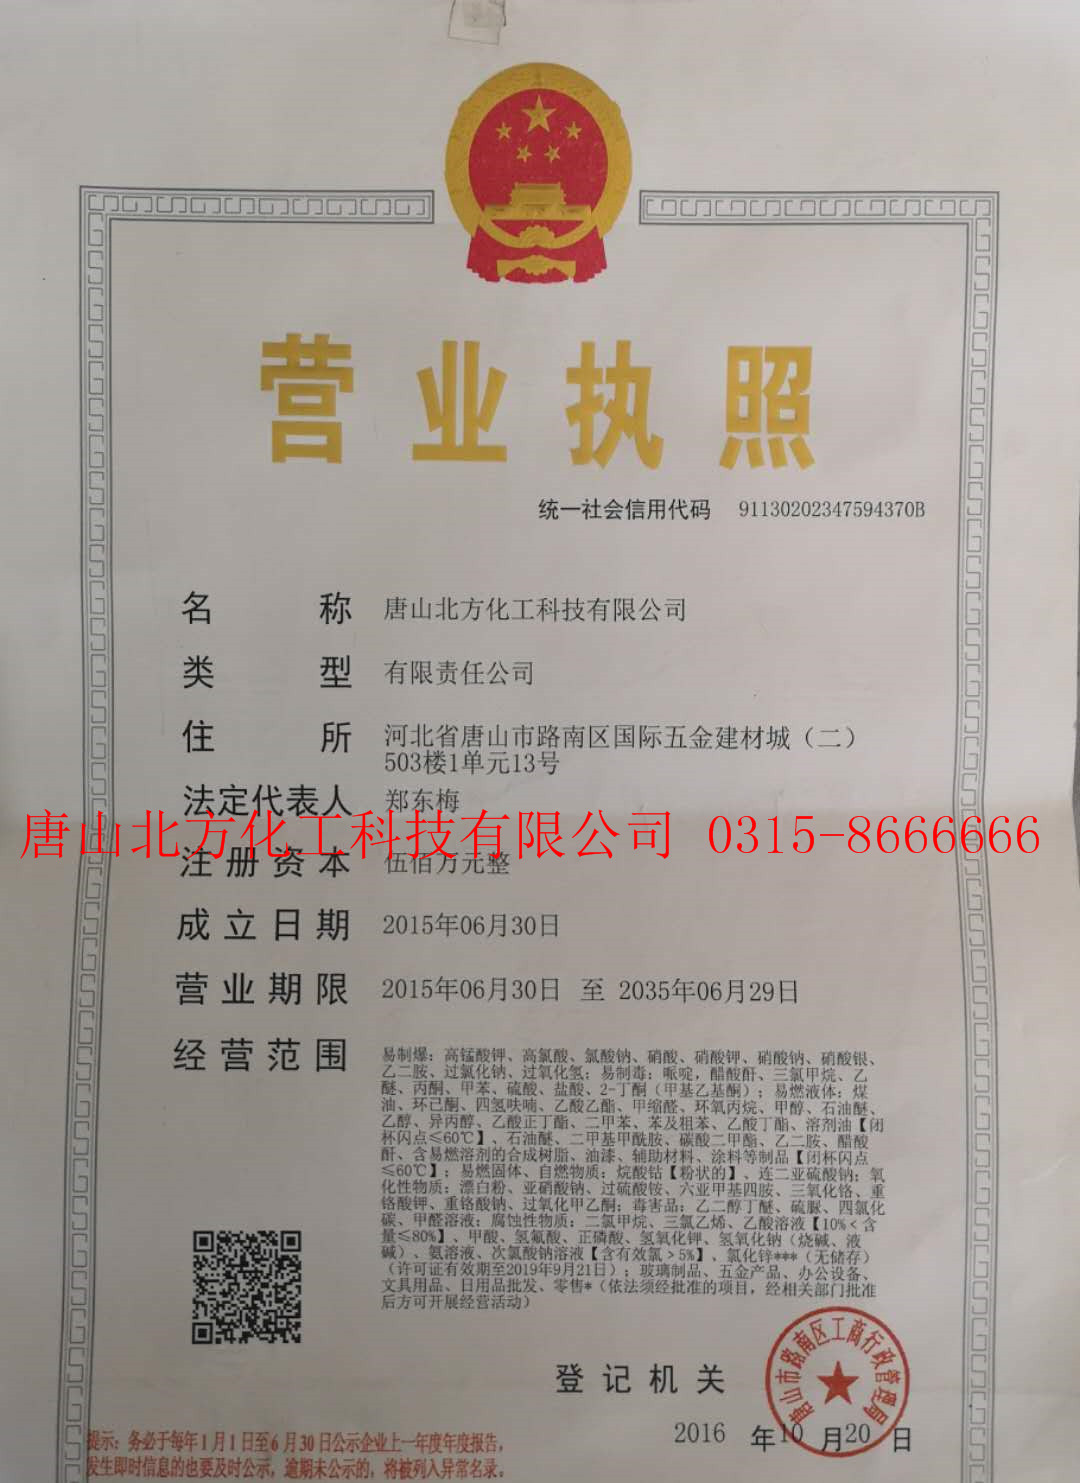 唐山北方化工-營業執照